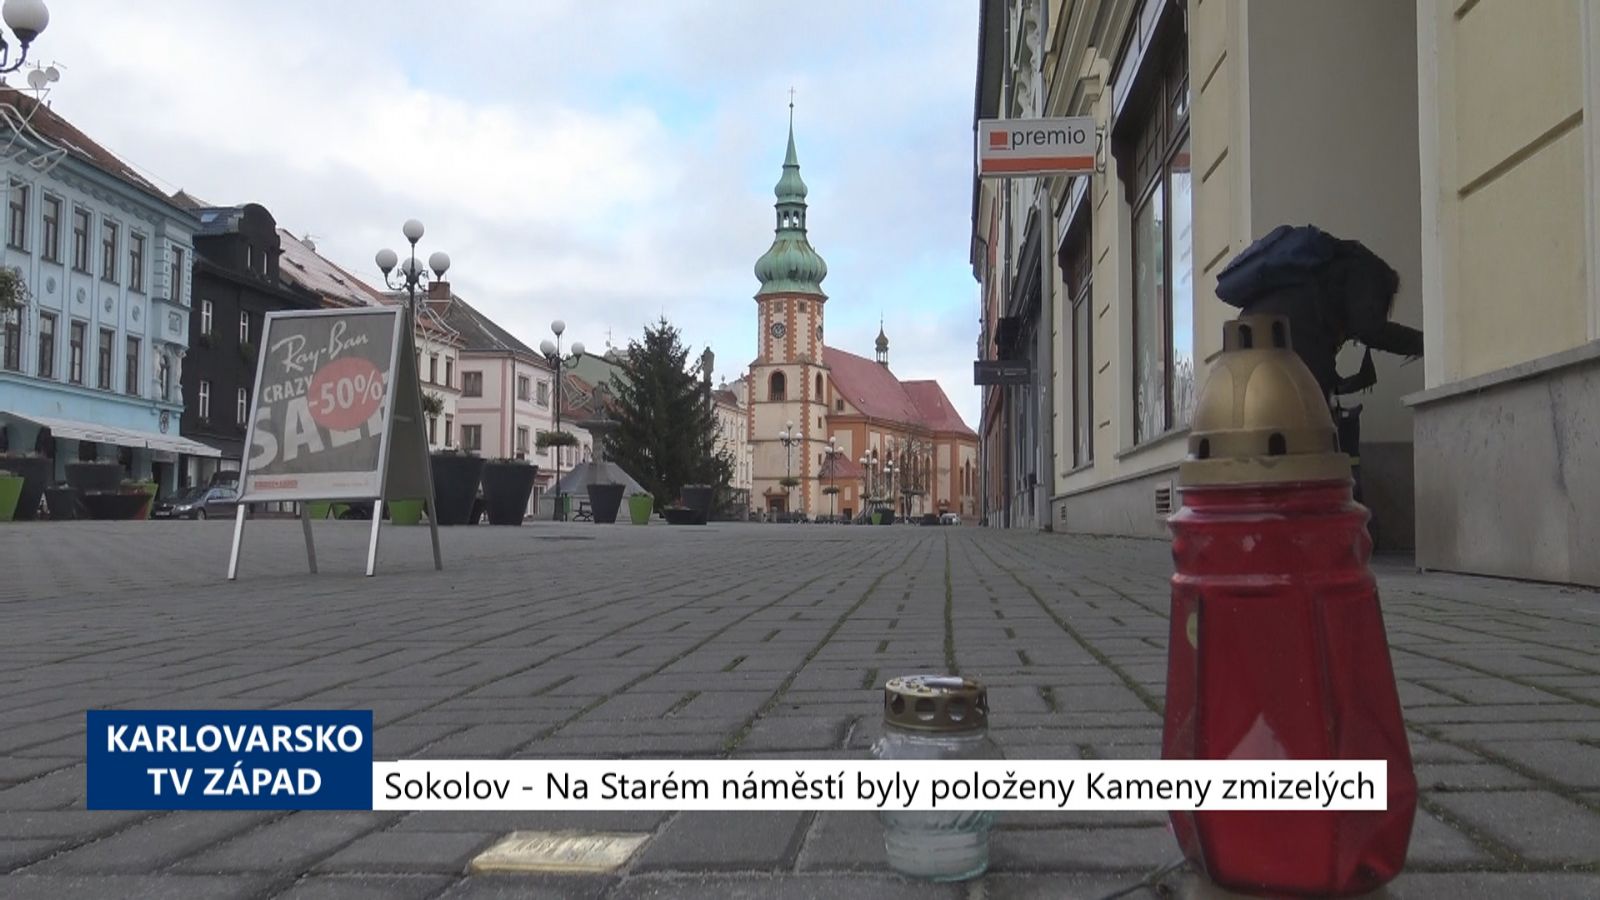 Sokolov: Na Starém náměstí byly položeny Kameny zmizelých (TV Západ)